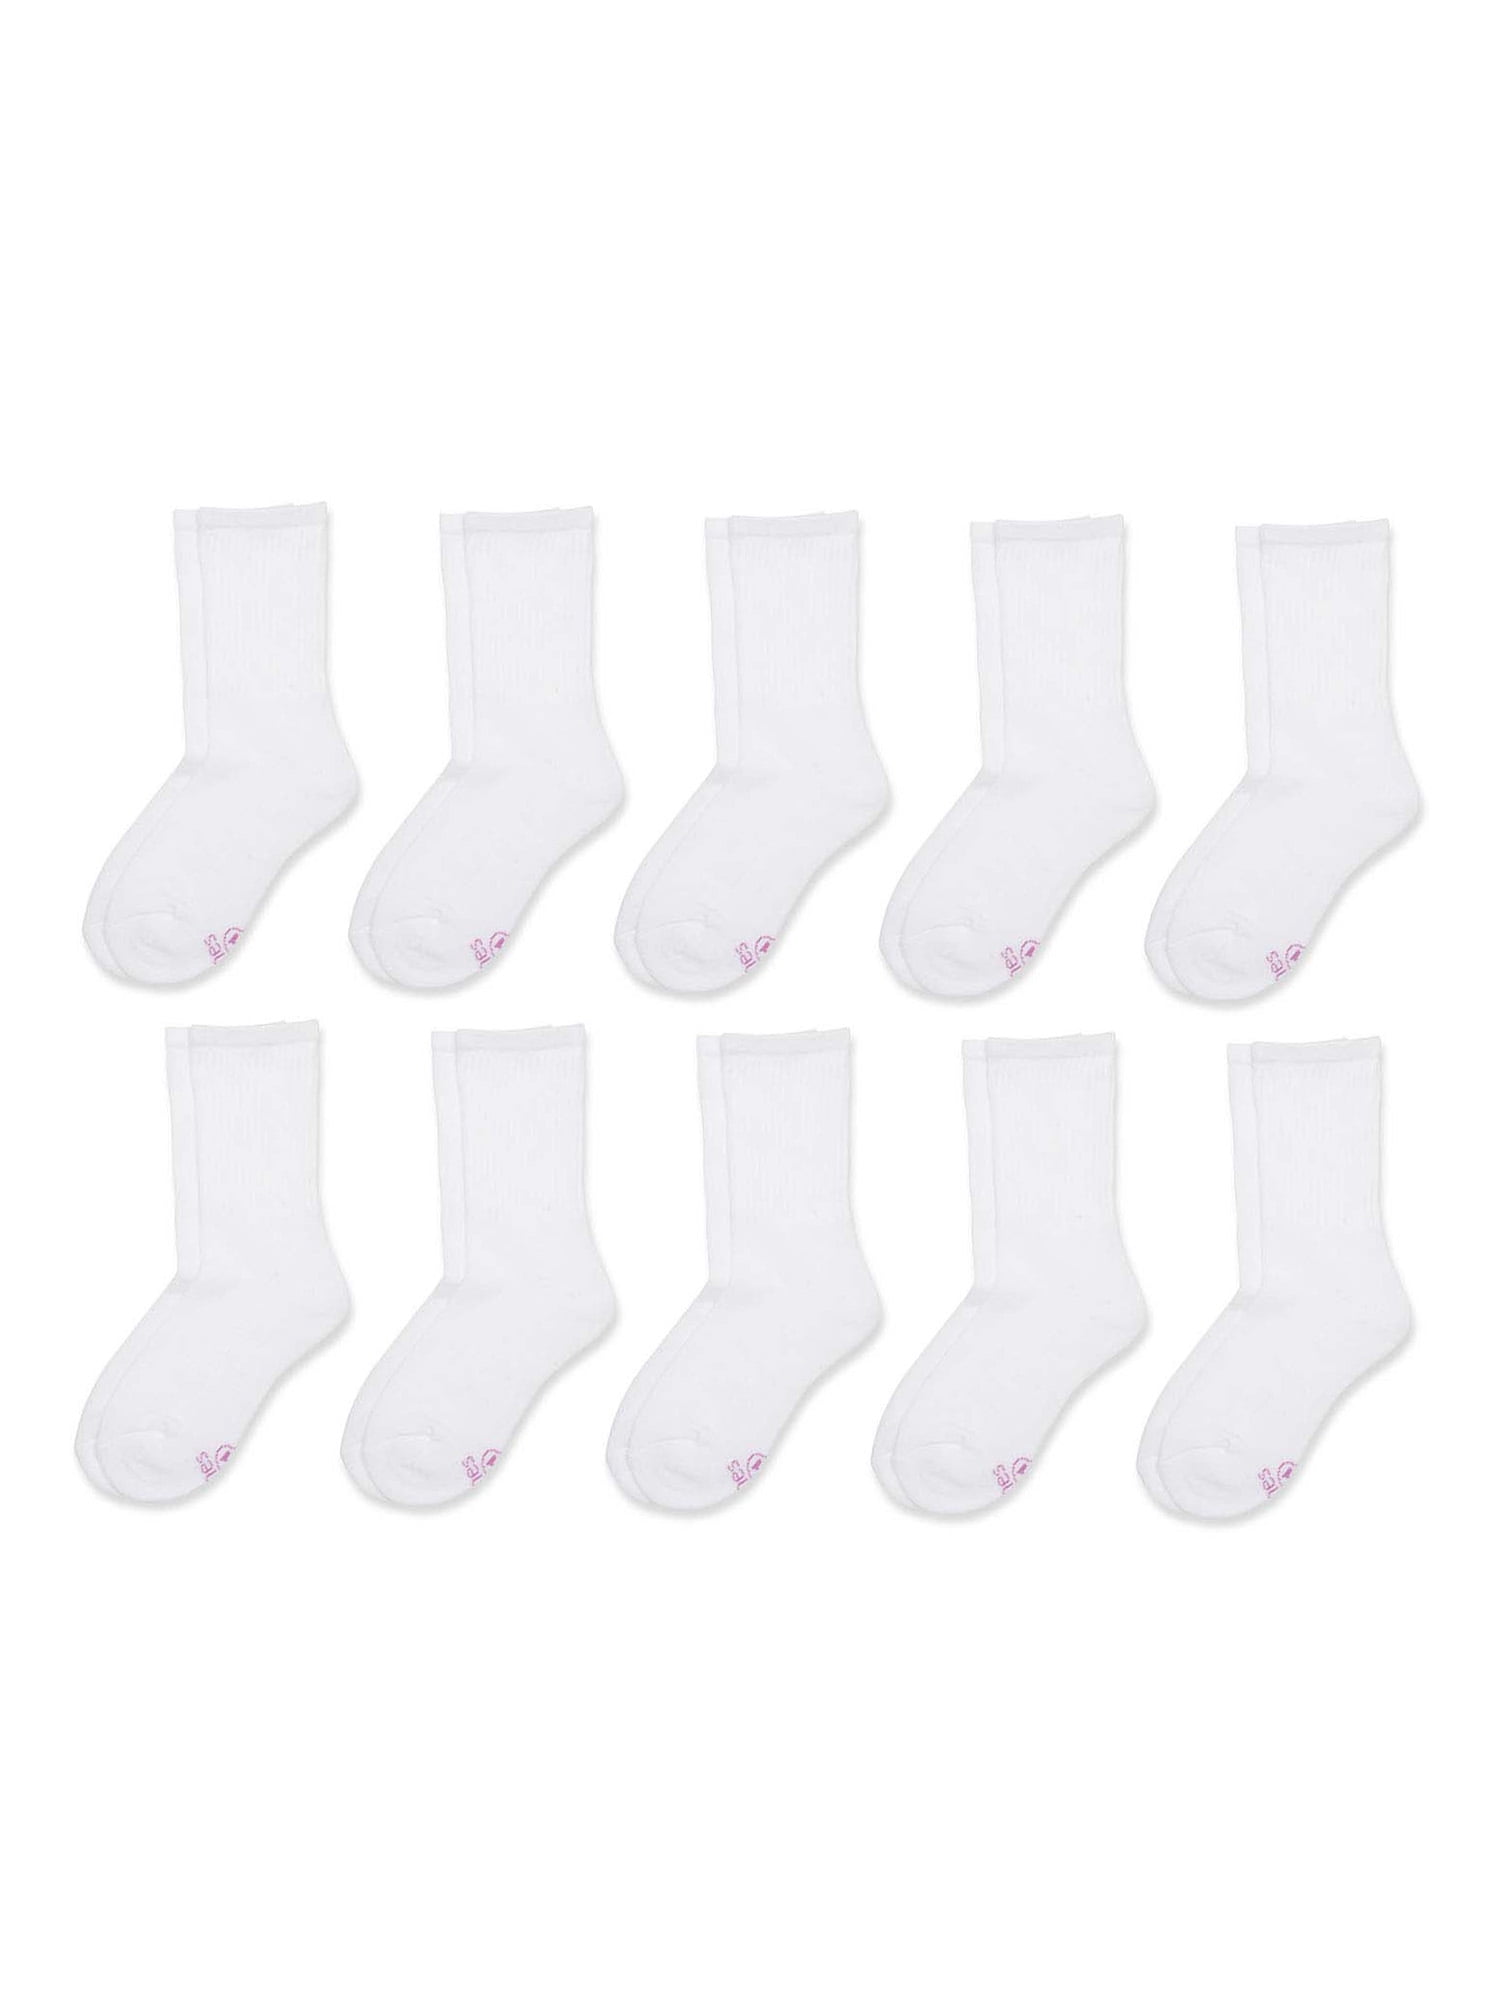 Hanes Girls' White Crew Sock, 10 Pack, Sizes S-L - Walmart.com